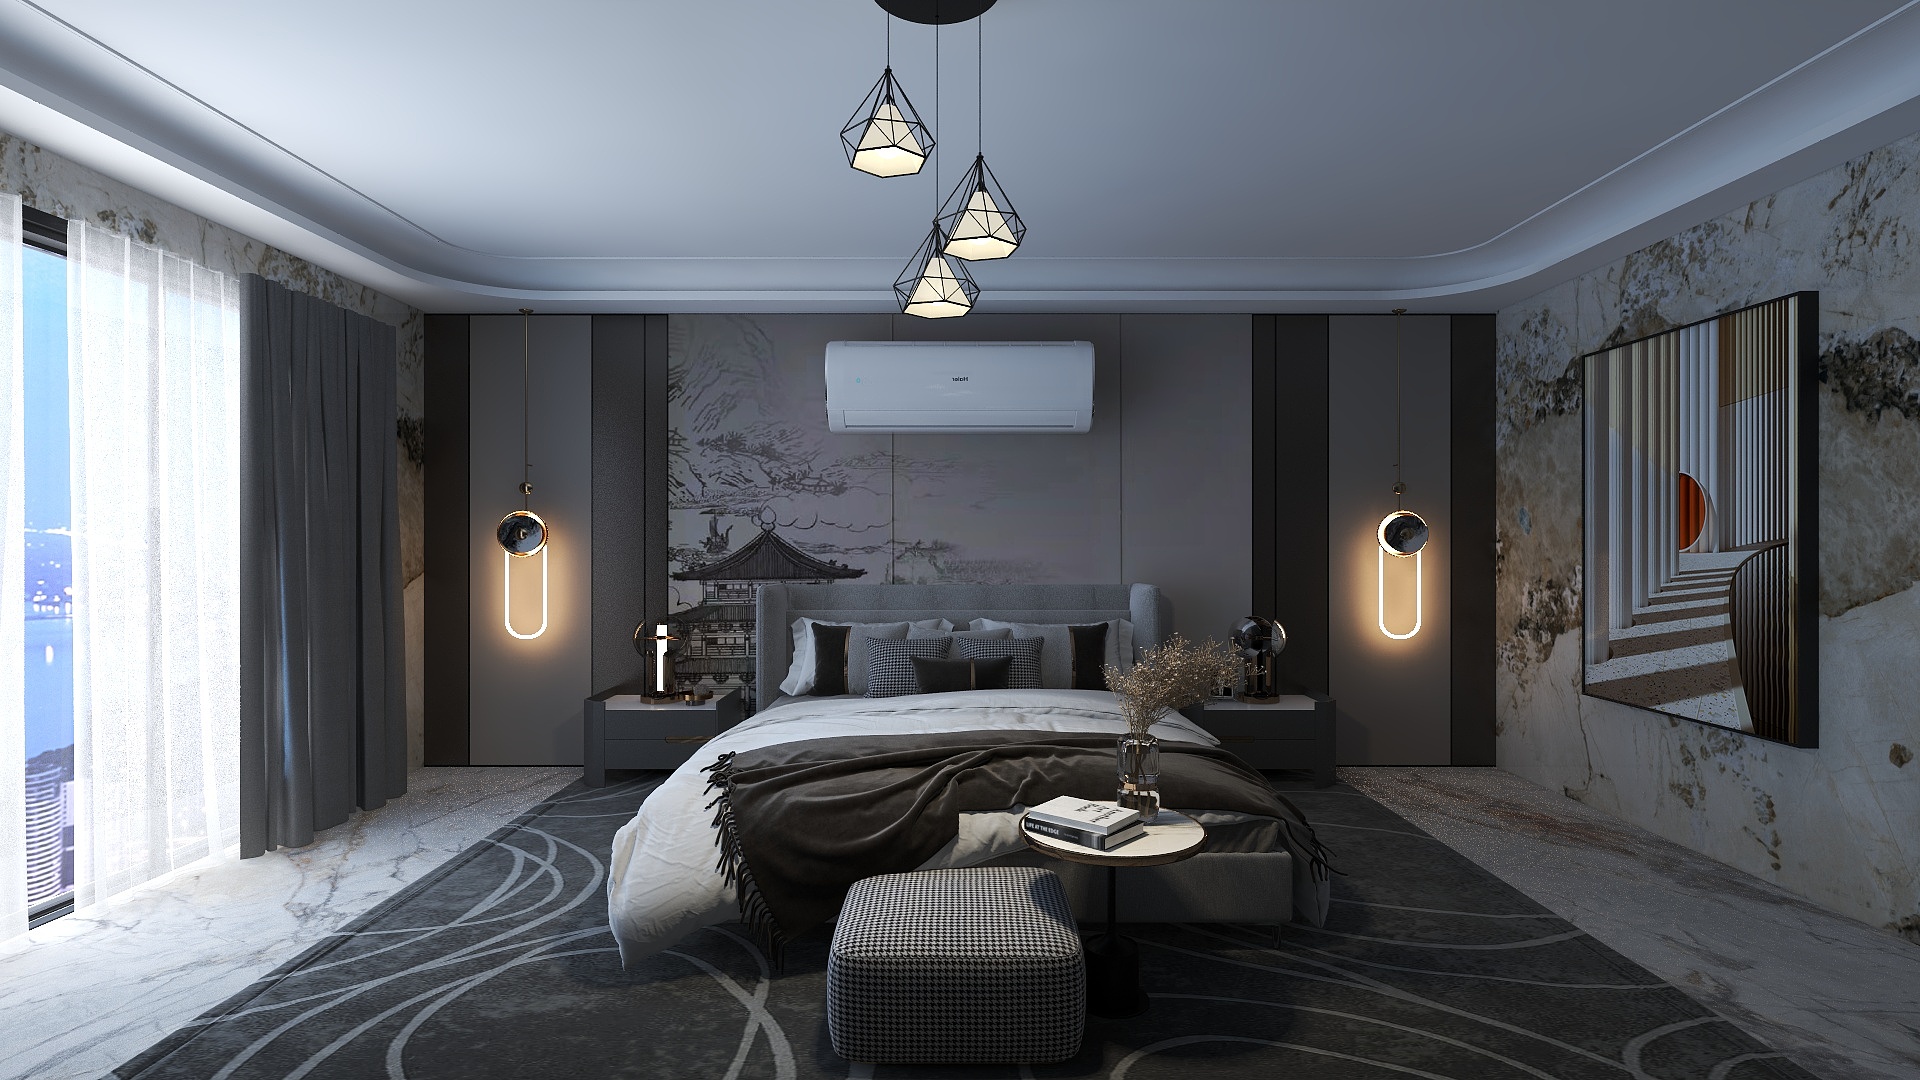 herinterioring的装修设计方案:Bedroom Interior